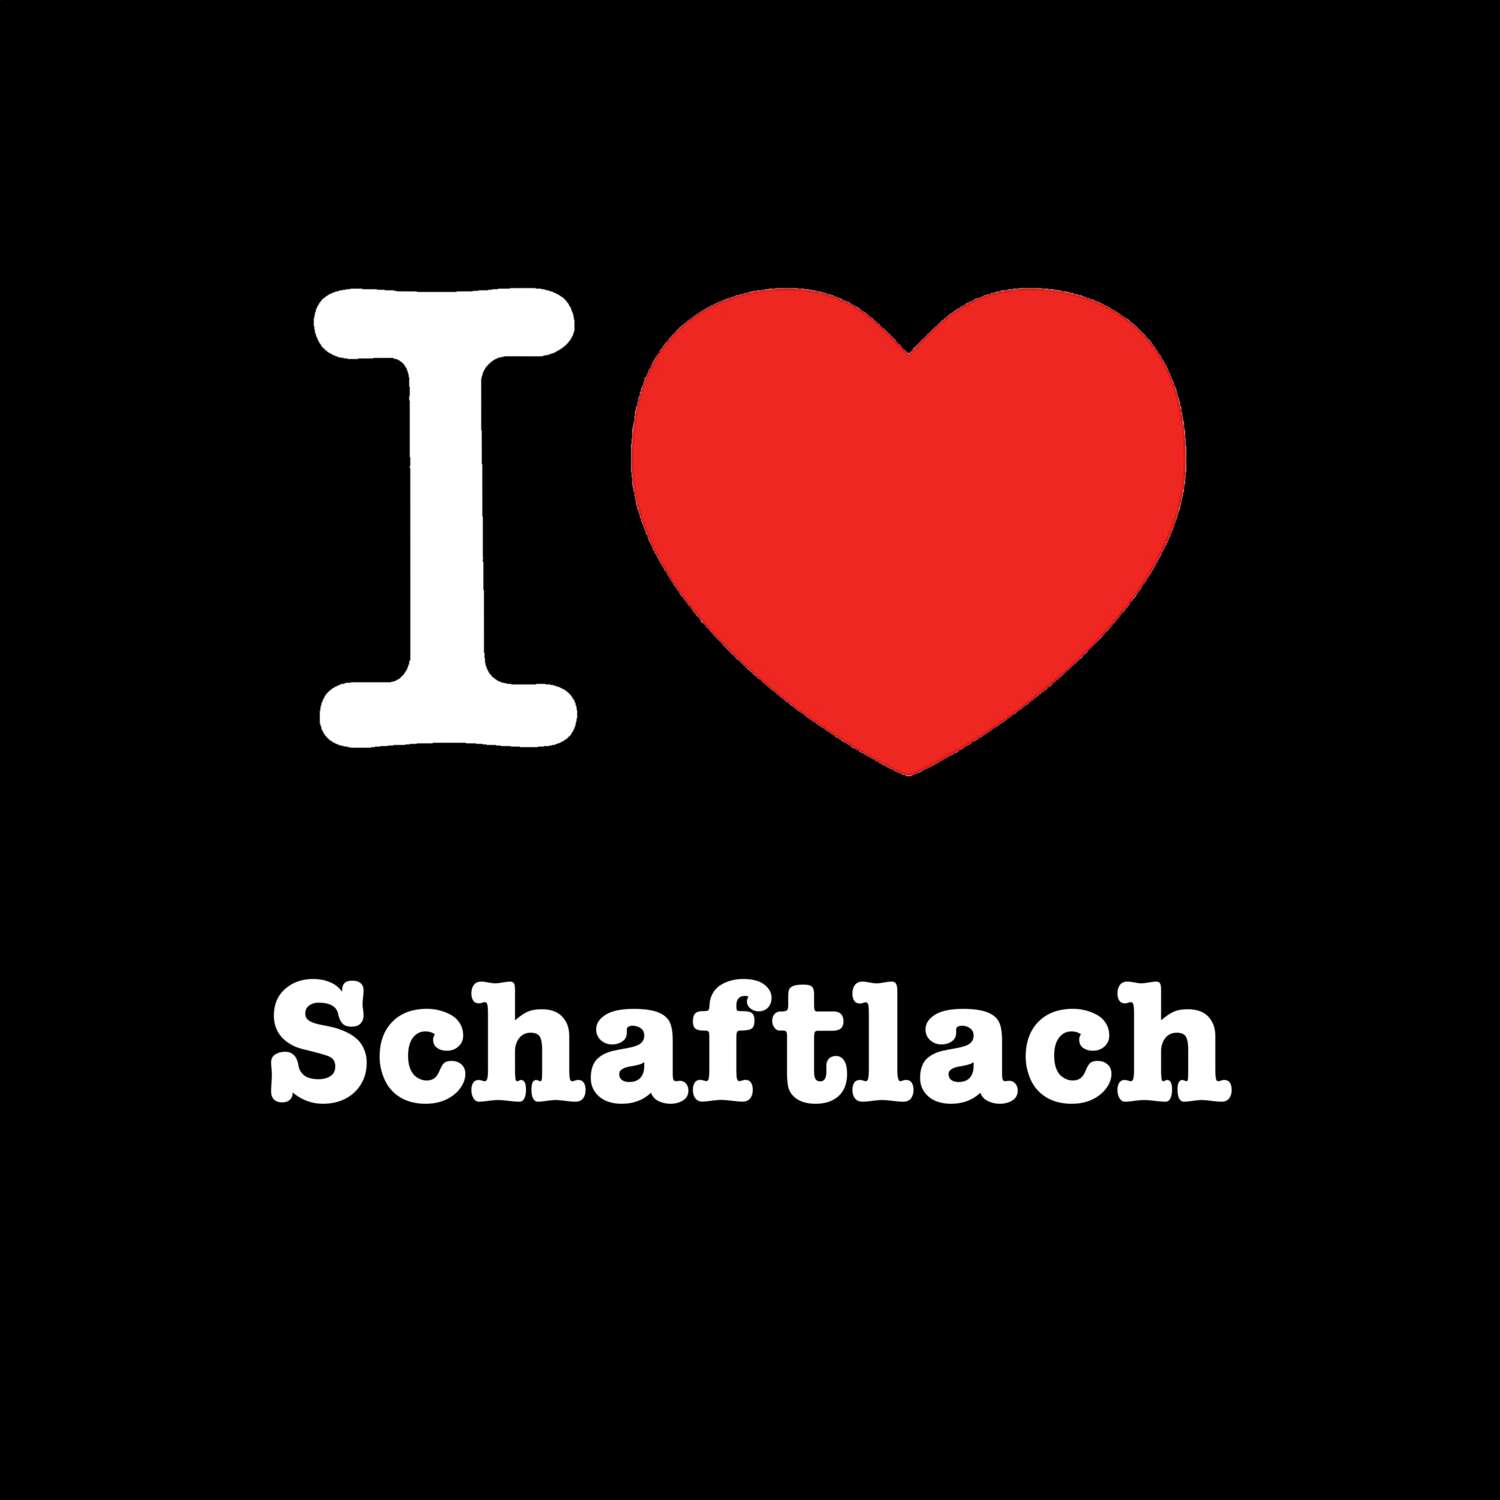 Schaftlach T-Shirt »I love«